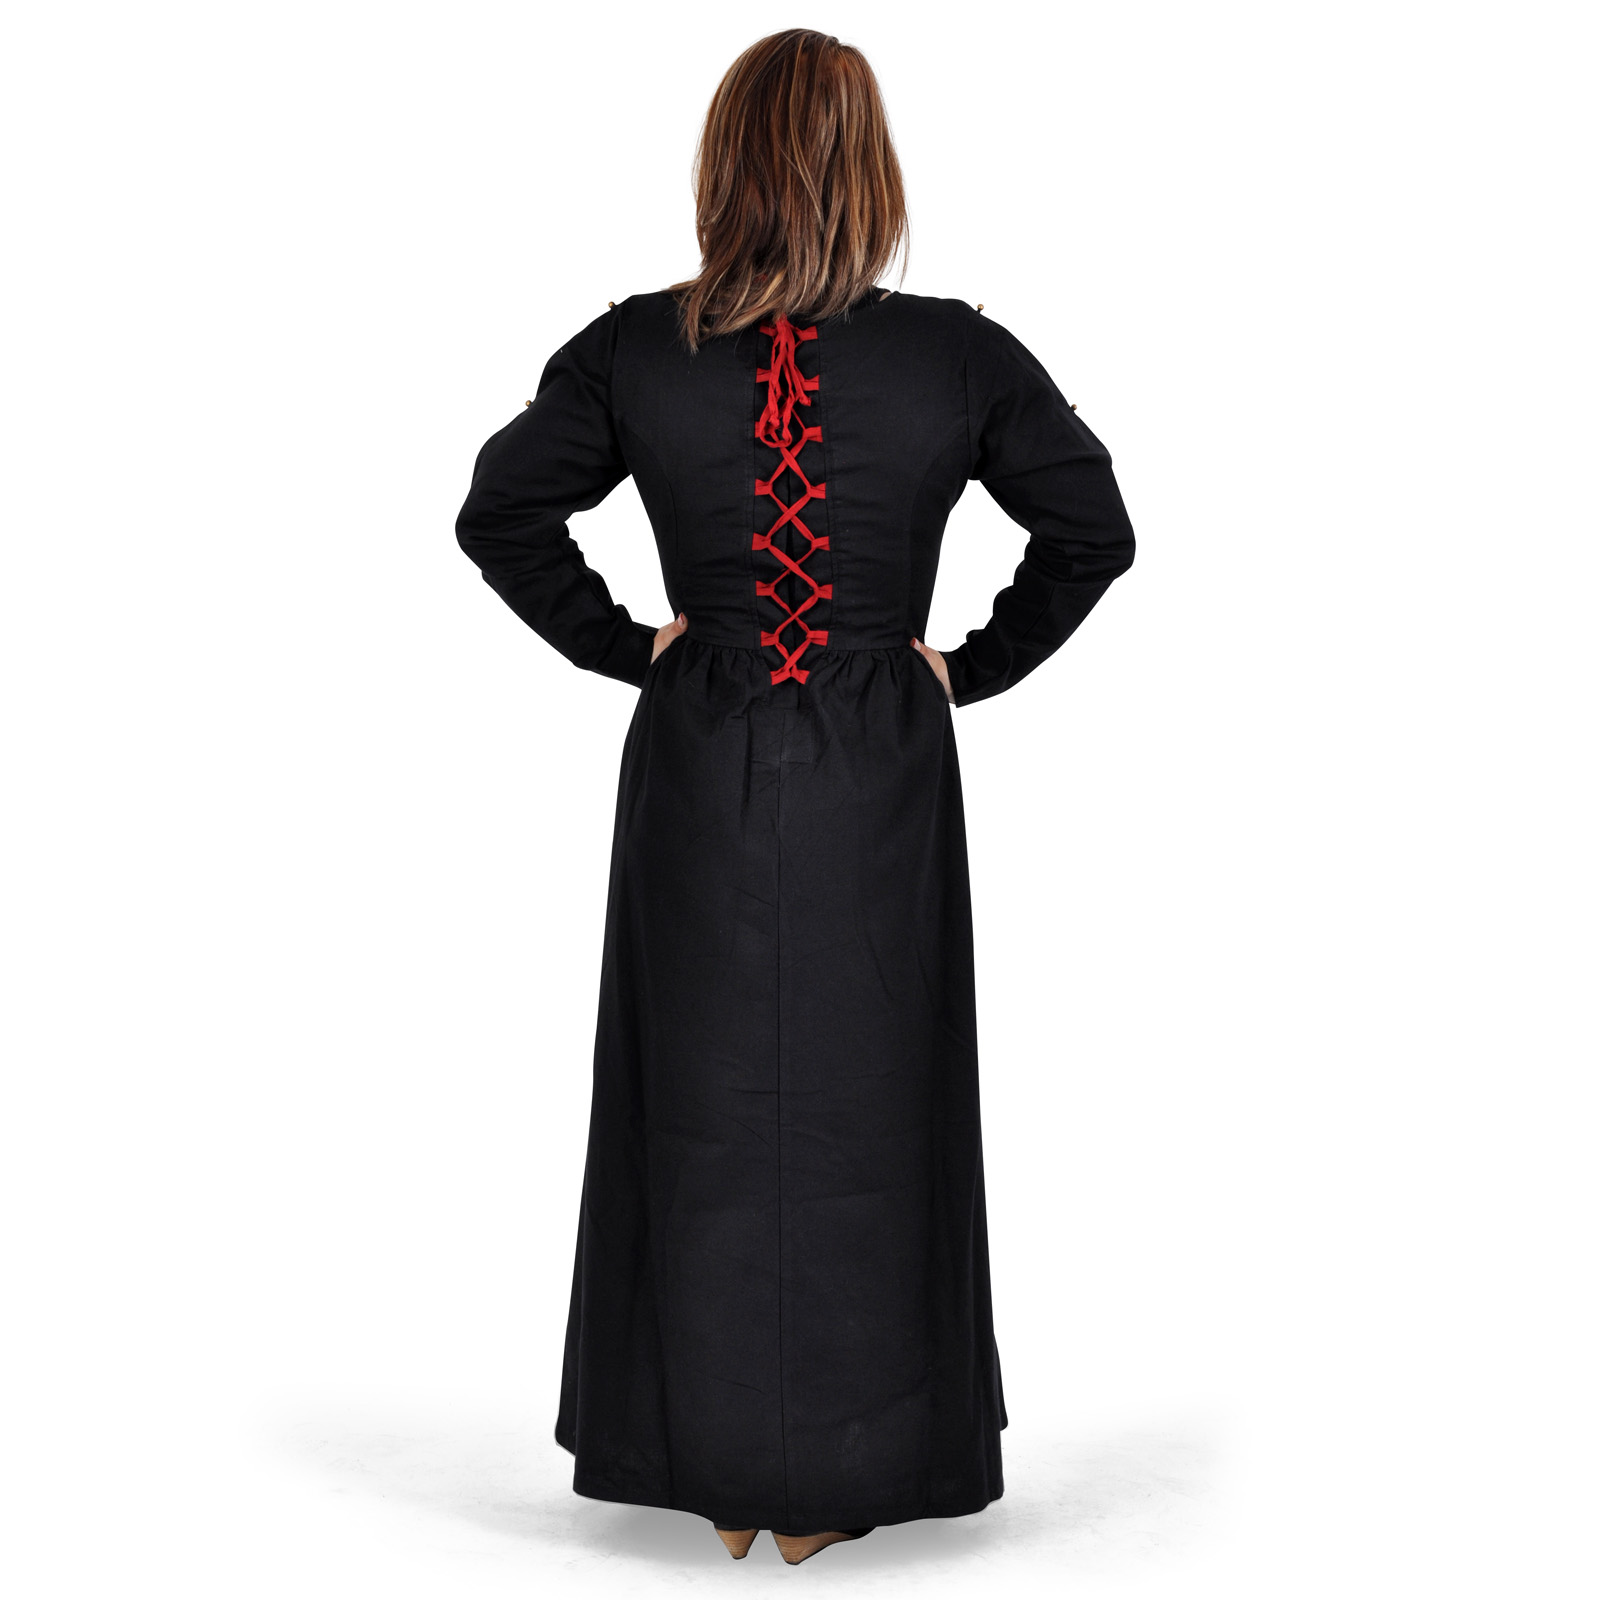 Mittelalter Kleid Orianne schwarz-rot